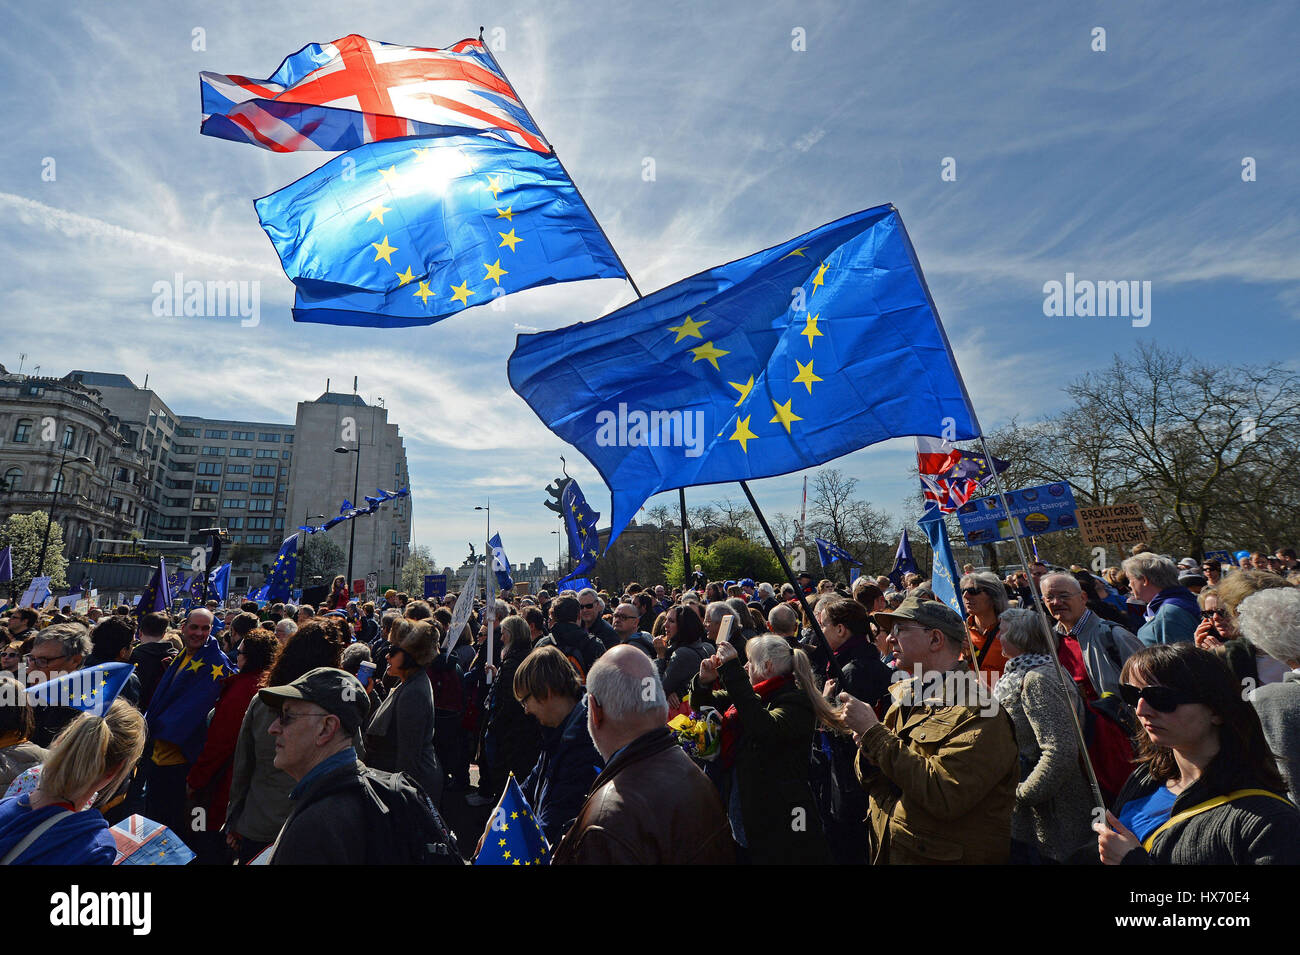 Pancartas y banderas son retenidos por los manifestantes a favor de la UE que participan en una marcha por Europa contra Brexit rally en el centro de Londres. Foto de stock